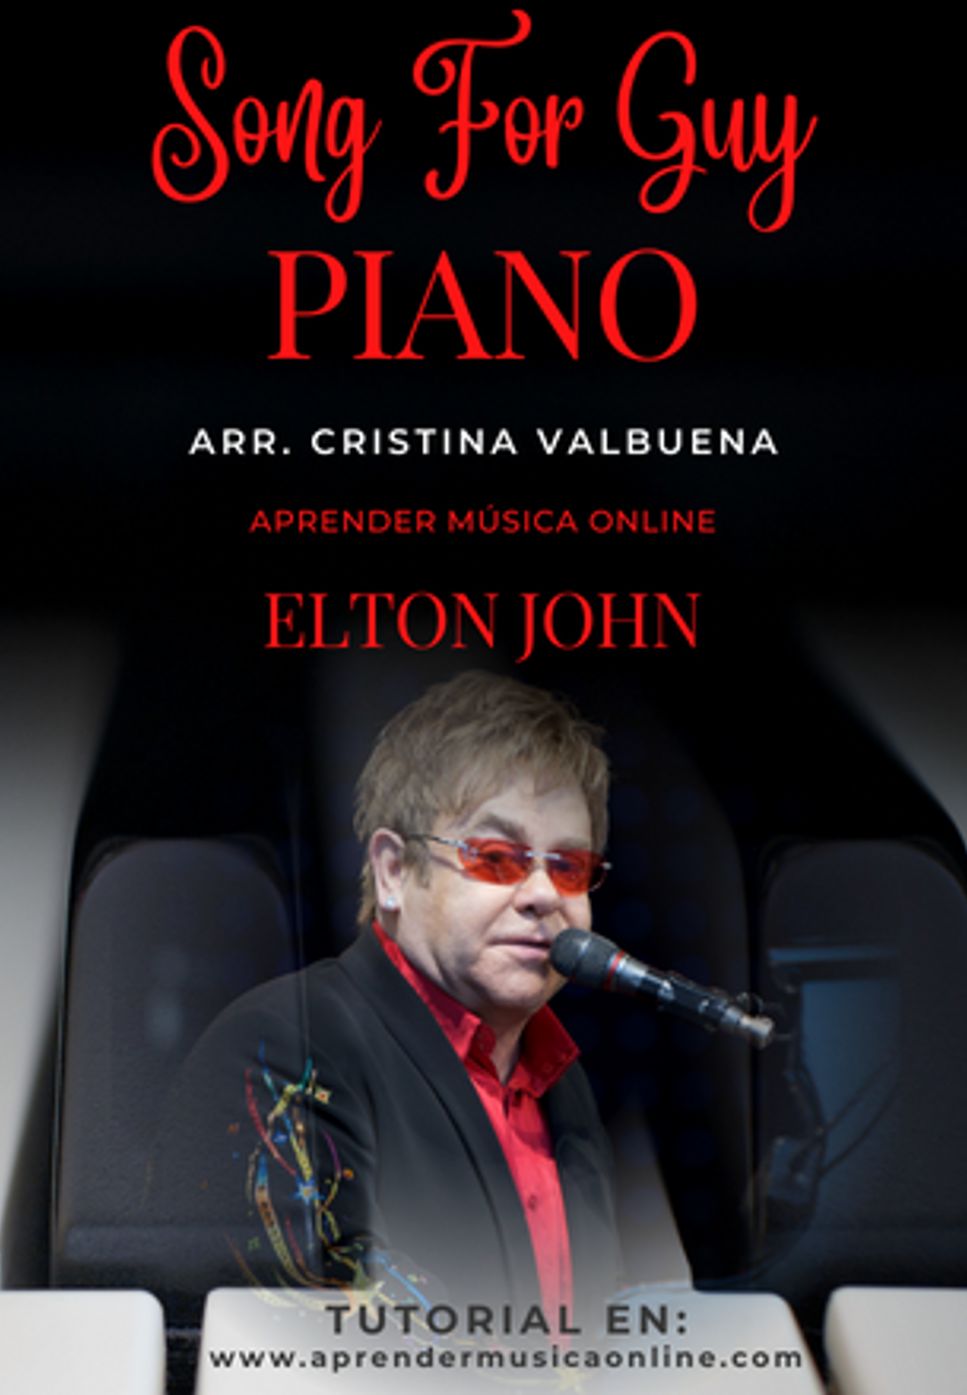 Elton John - Song For Guy by Cristina Valbuena